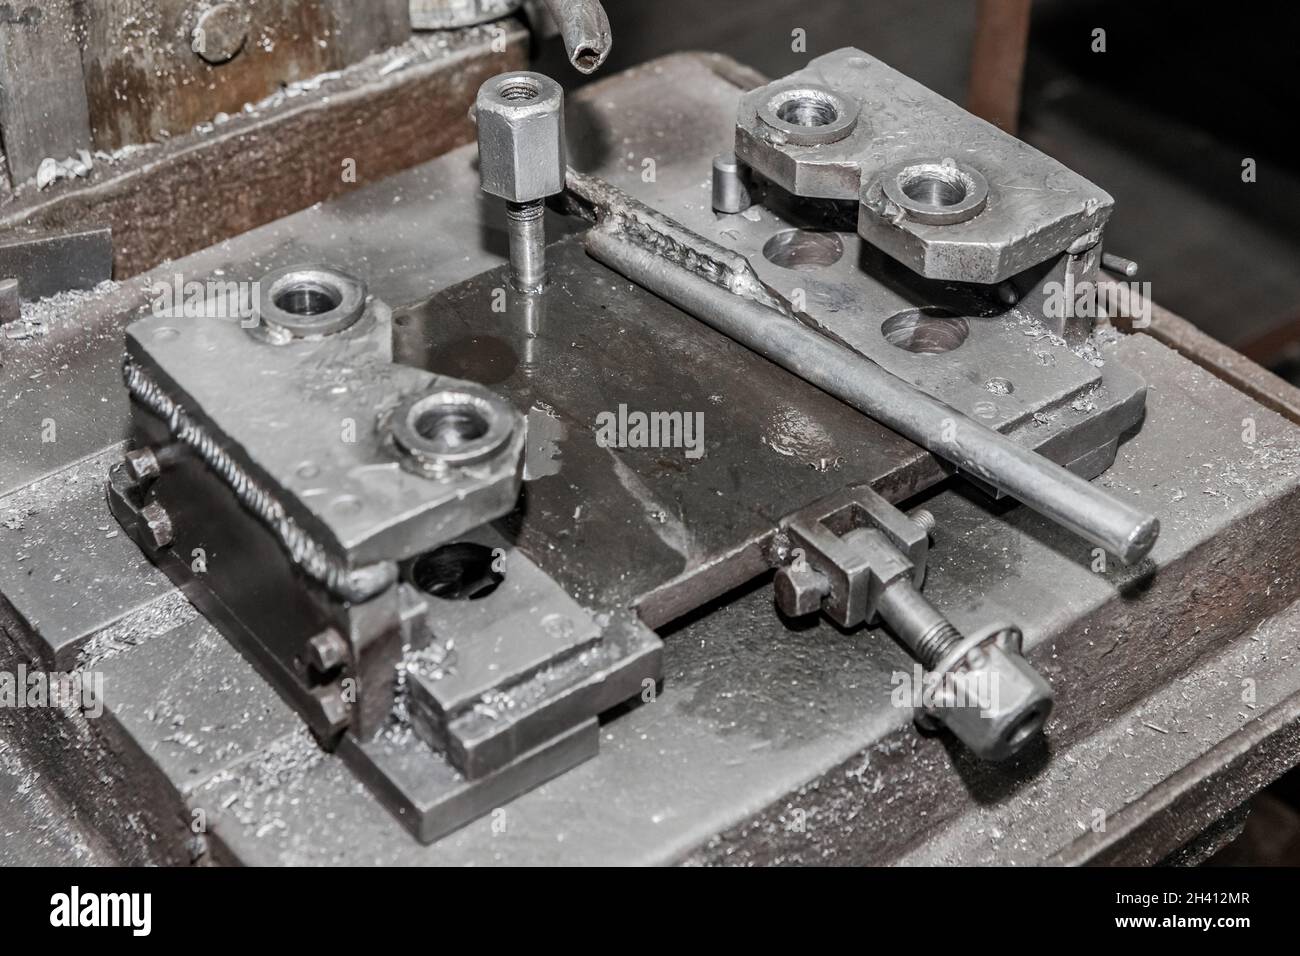 Processo e sistema, attrezzatura e utensile per la lavorazione dei metalli con meccanismi di fissaggio per la foratura del ferro con tubo per l'acqua di raffreddamento nell'officina di un i Foto Stock